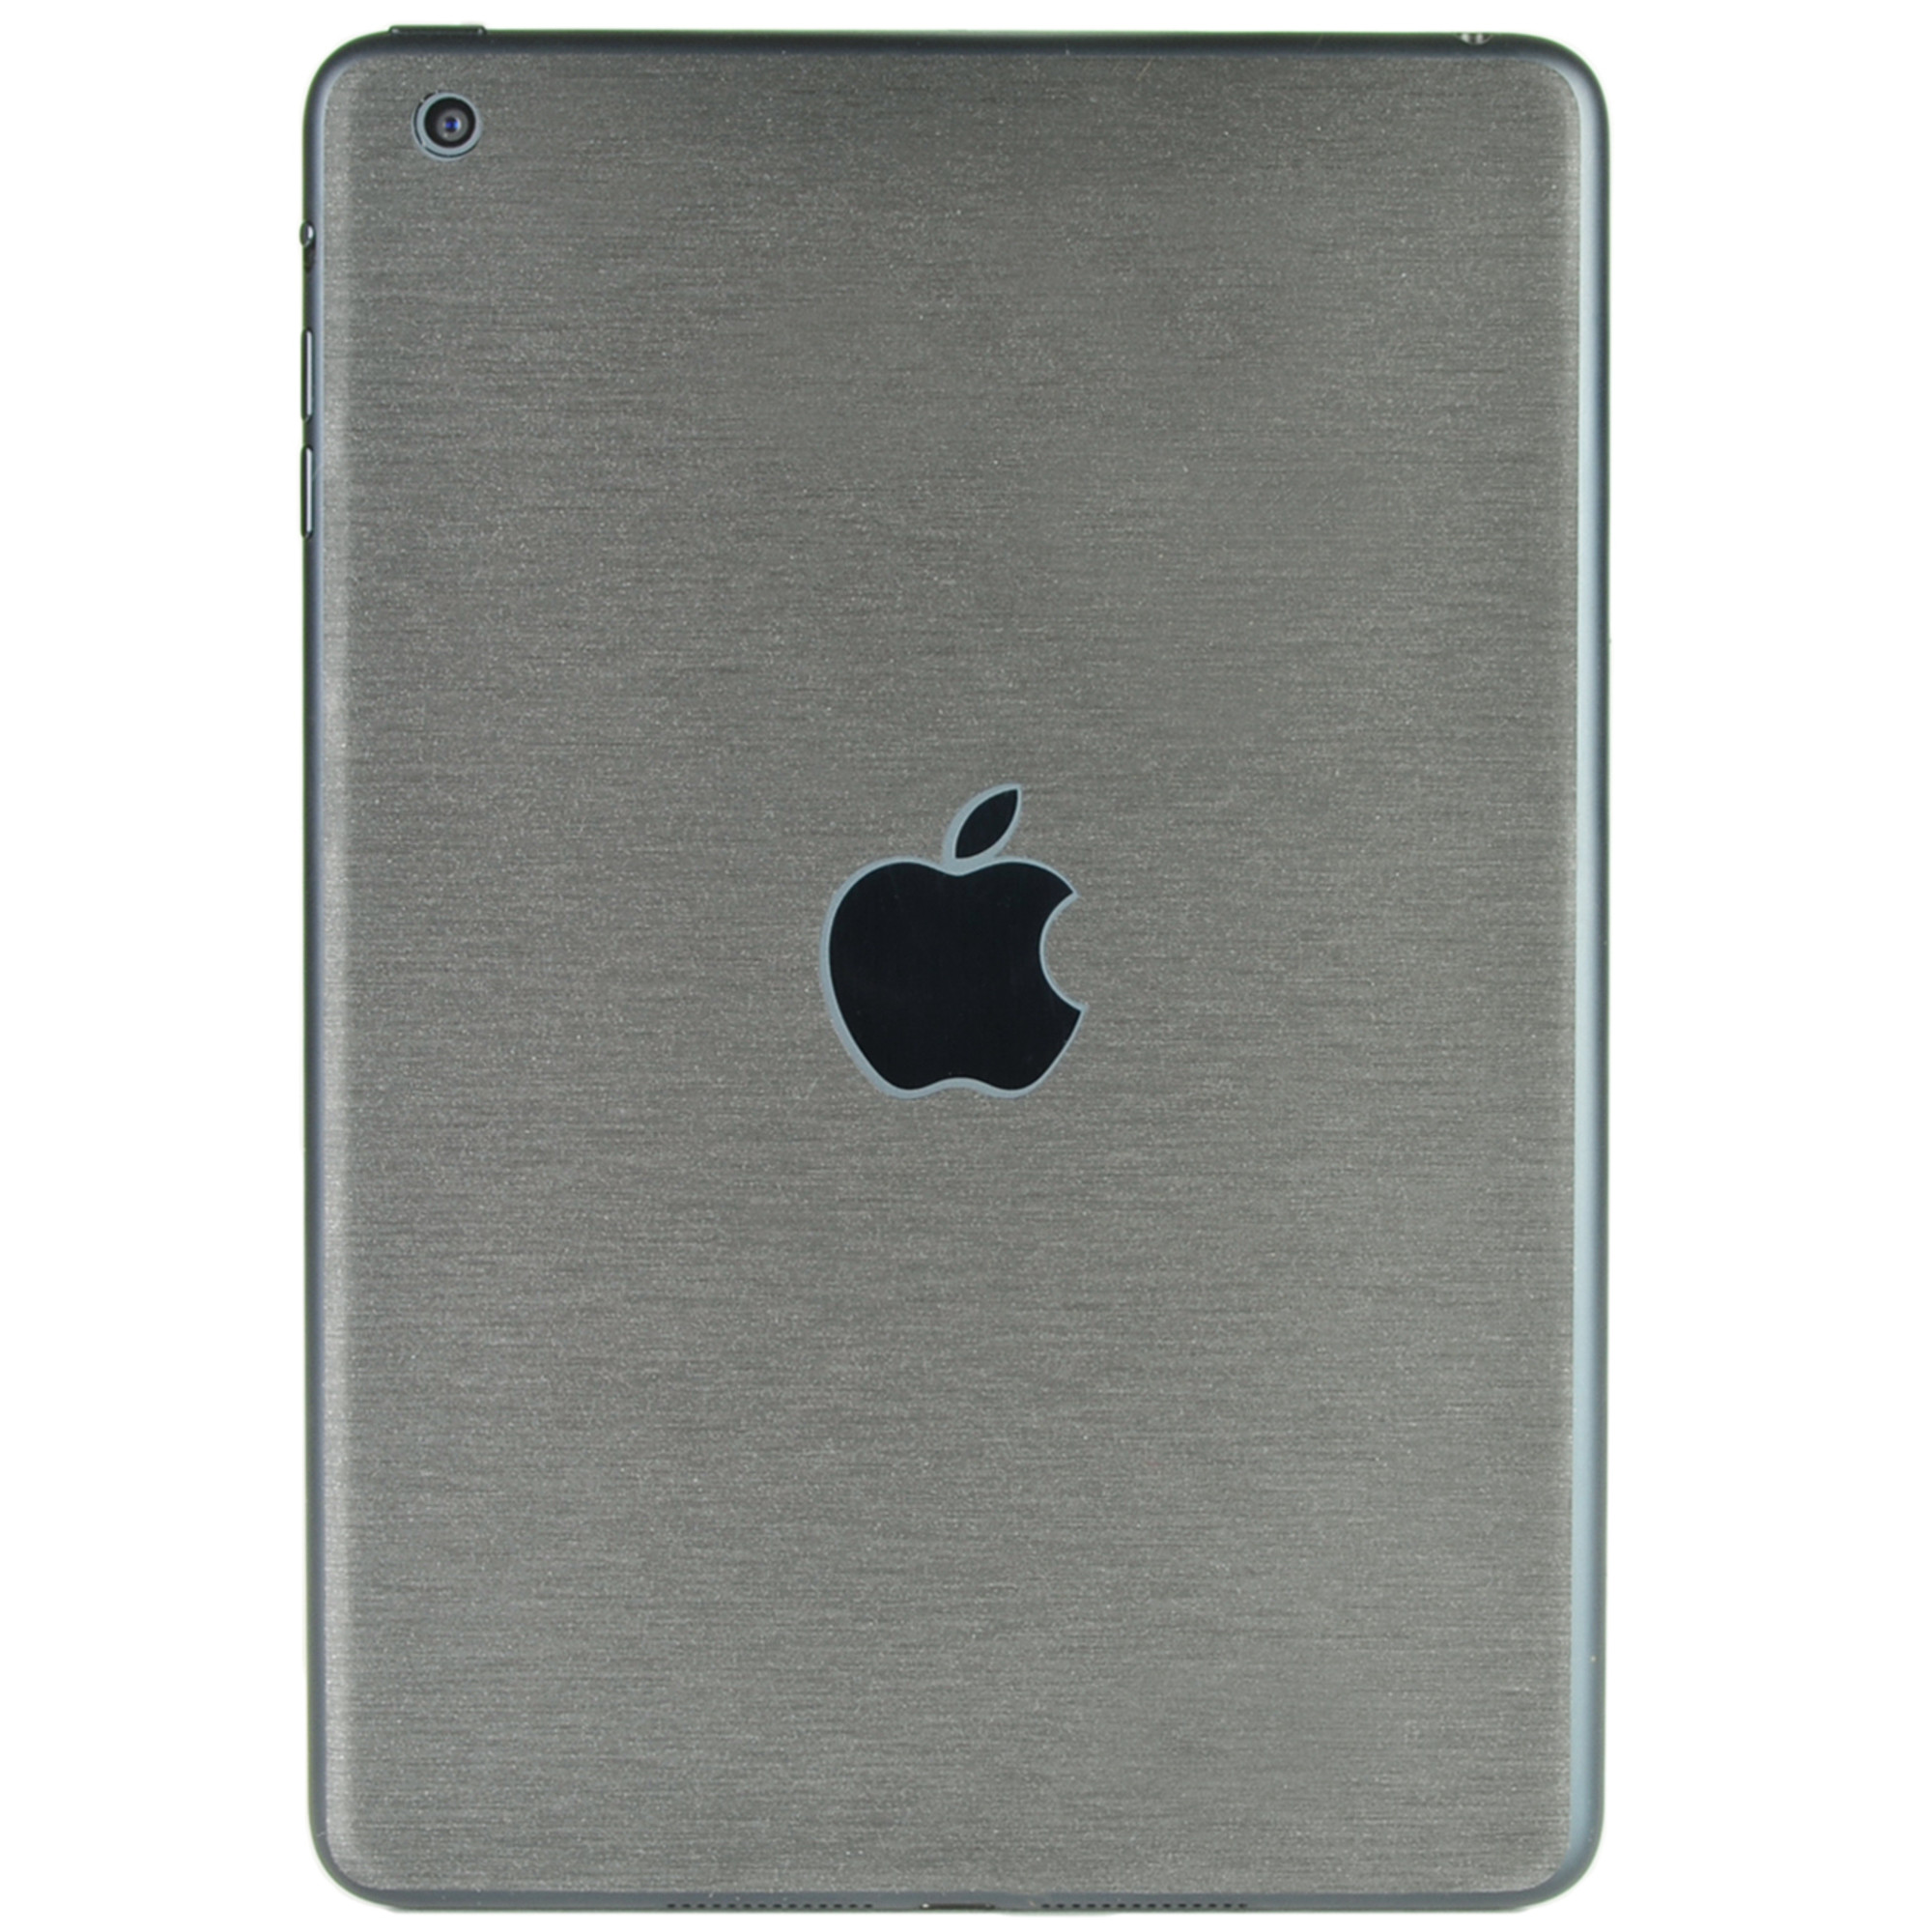 Apple iPad mini 16GB WiFi iOS 7.9